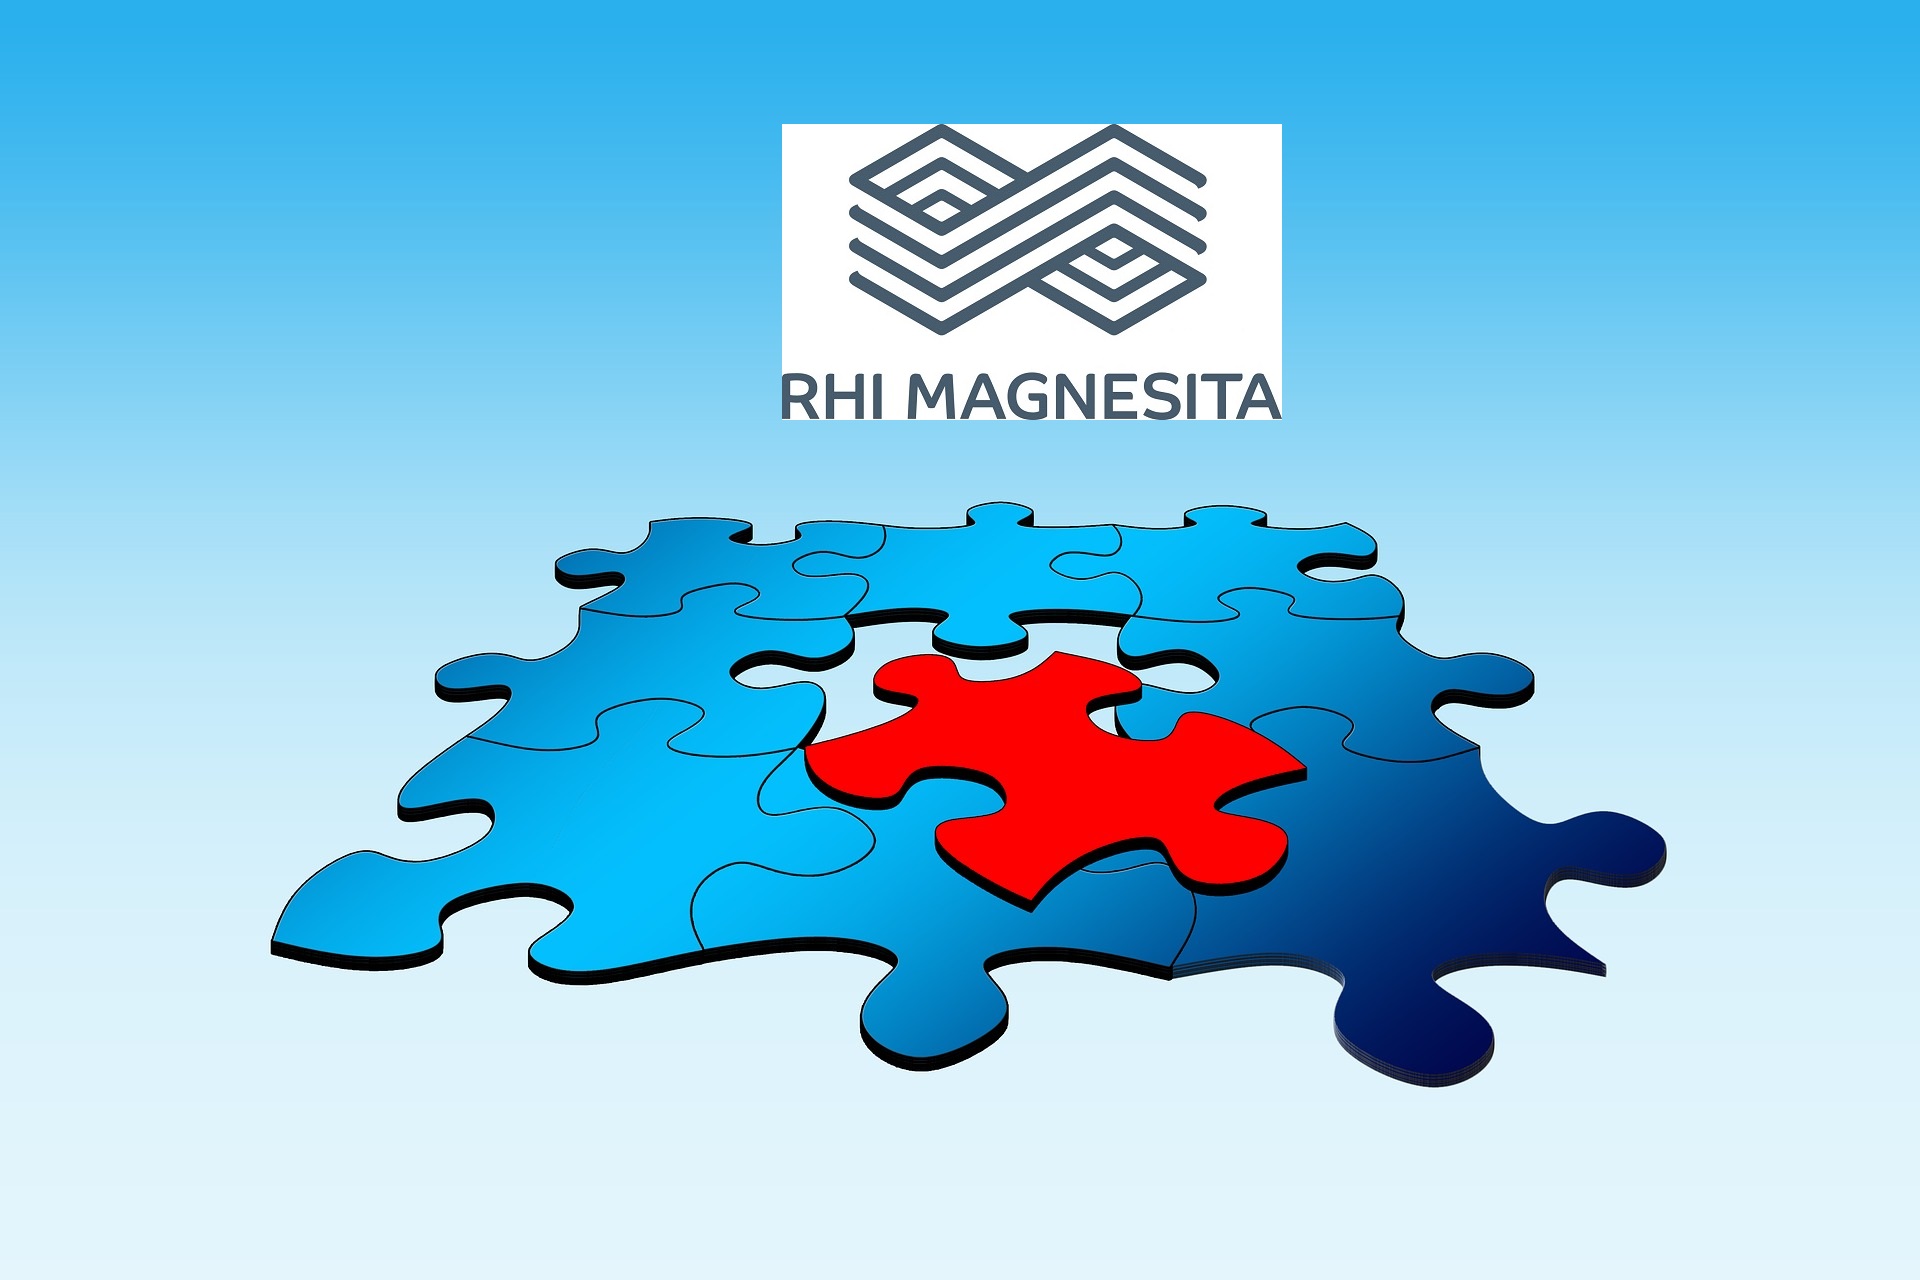 Orient-Refractories-RHI-Magnesita-Composite-Scheme-Rejected